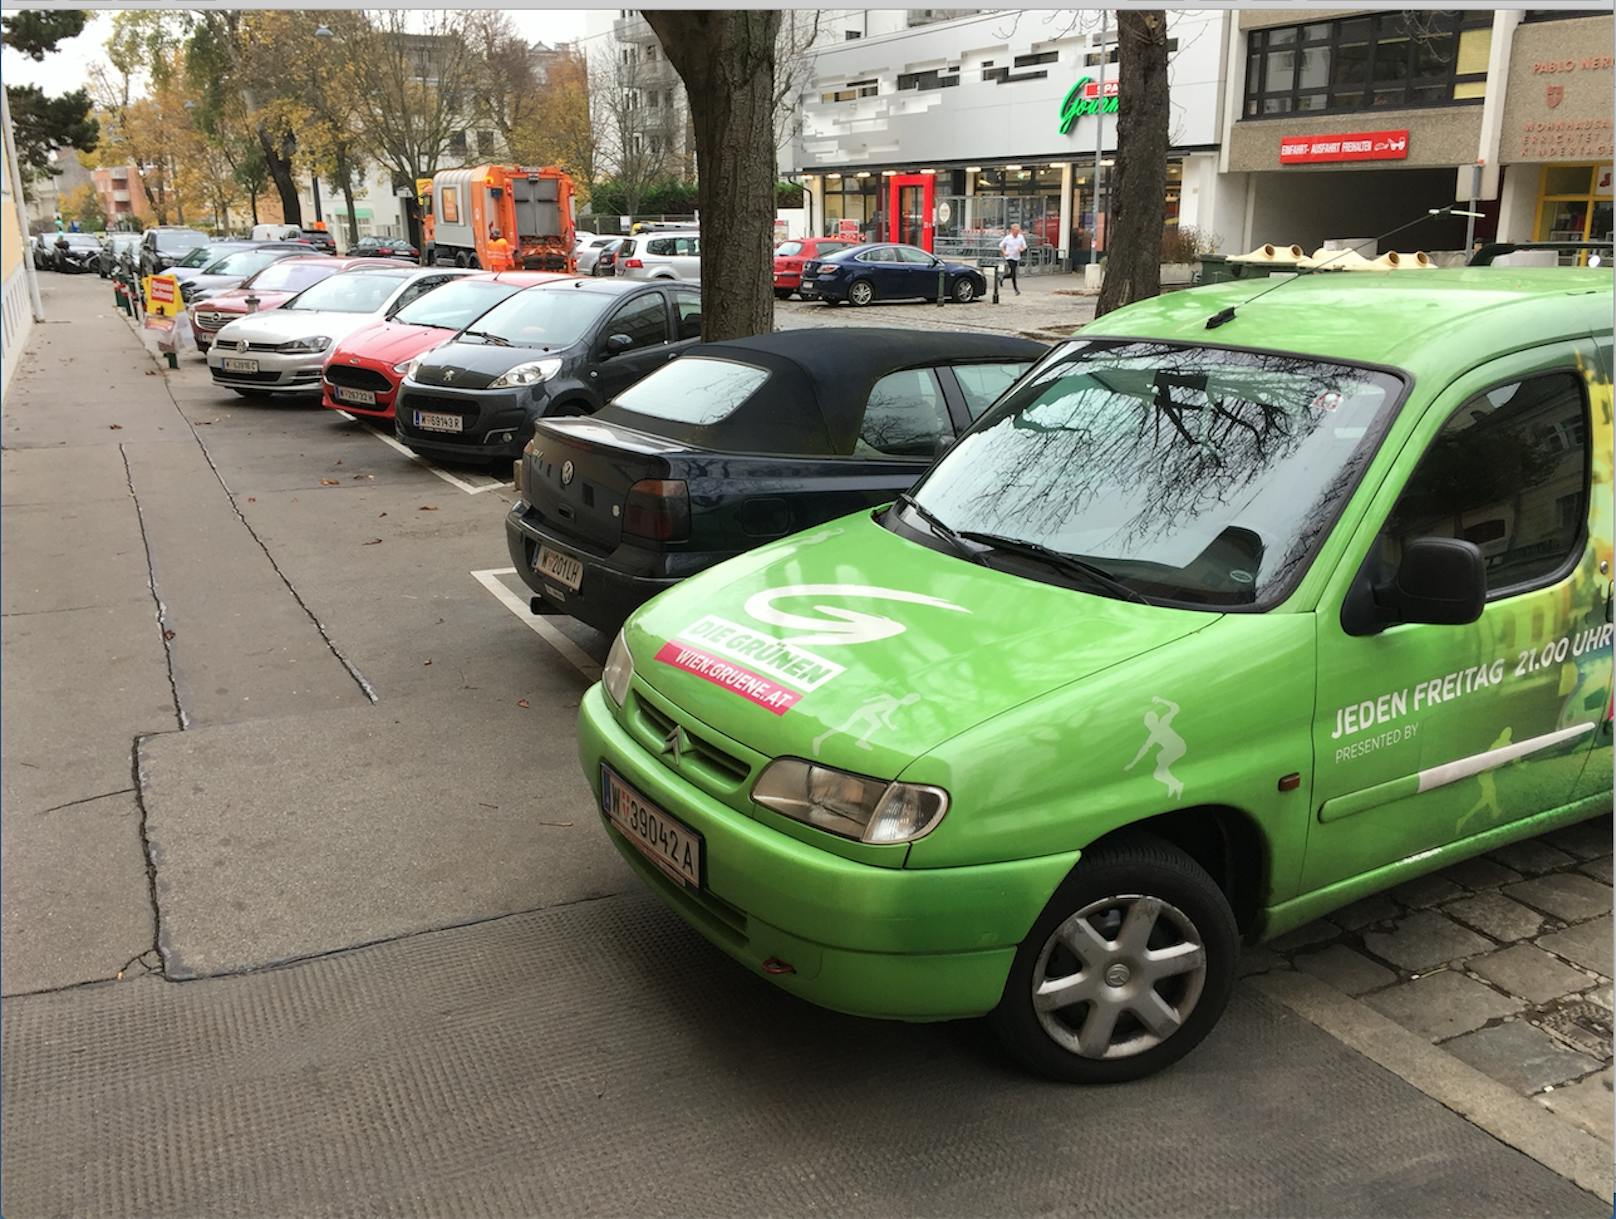 Wahlkampfauto der "Grünen" verparkt Gehsteig